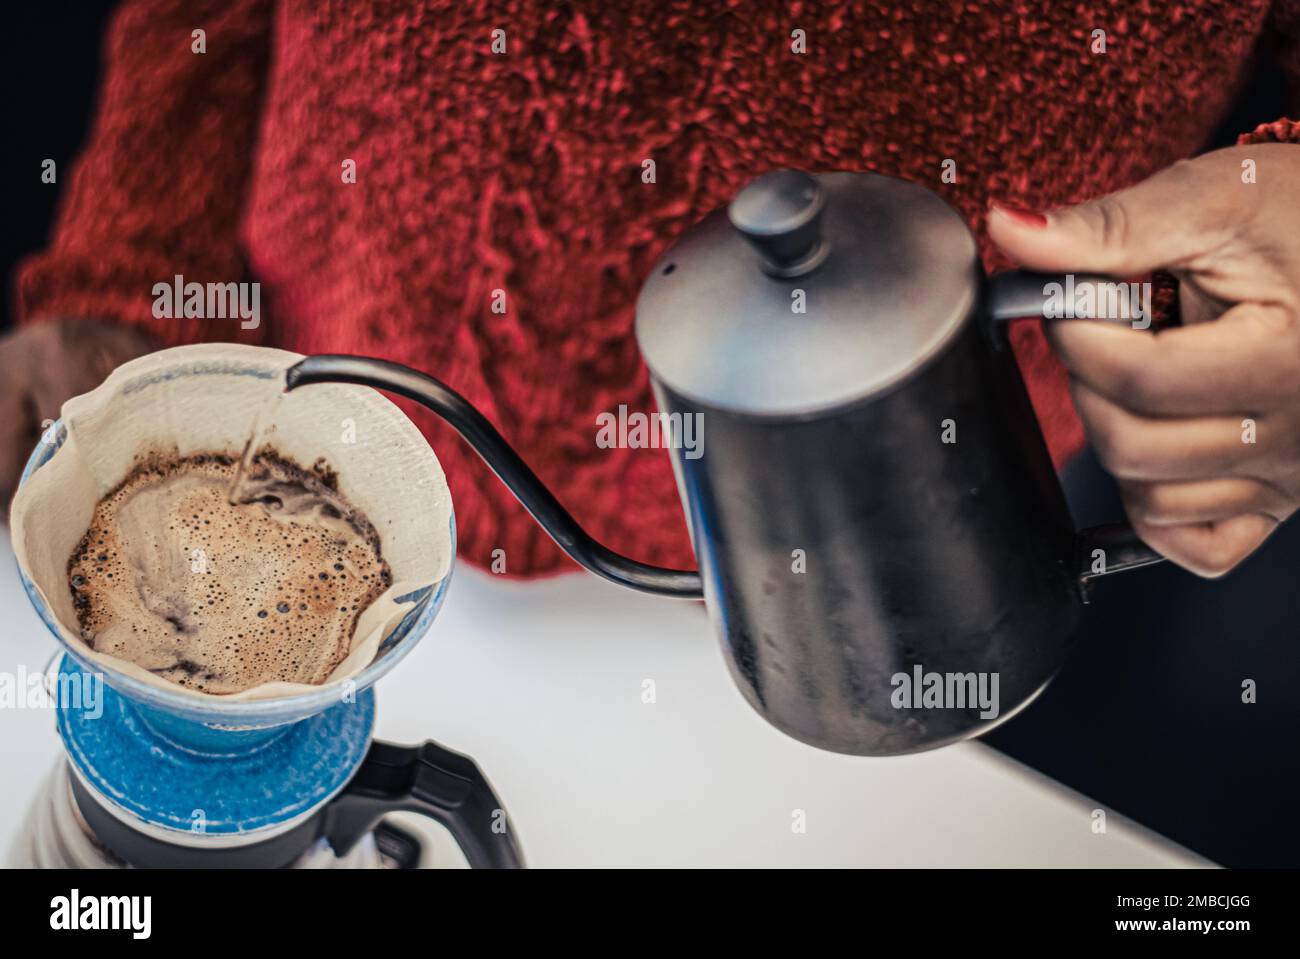 colador de cafe de tela Coffee Dripper Holder Pour Over Coffee Makers Pour  Over